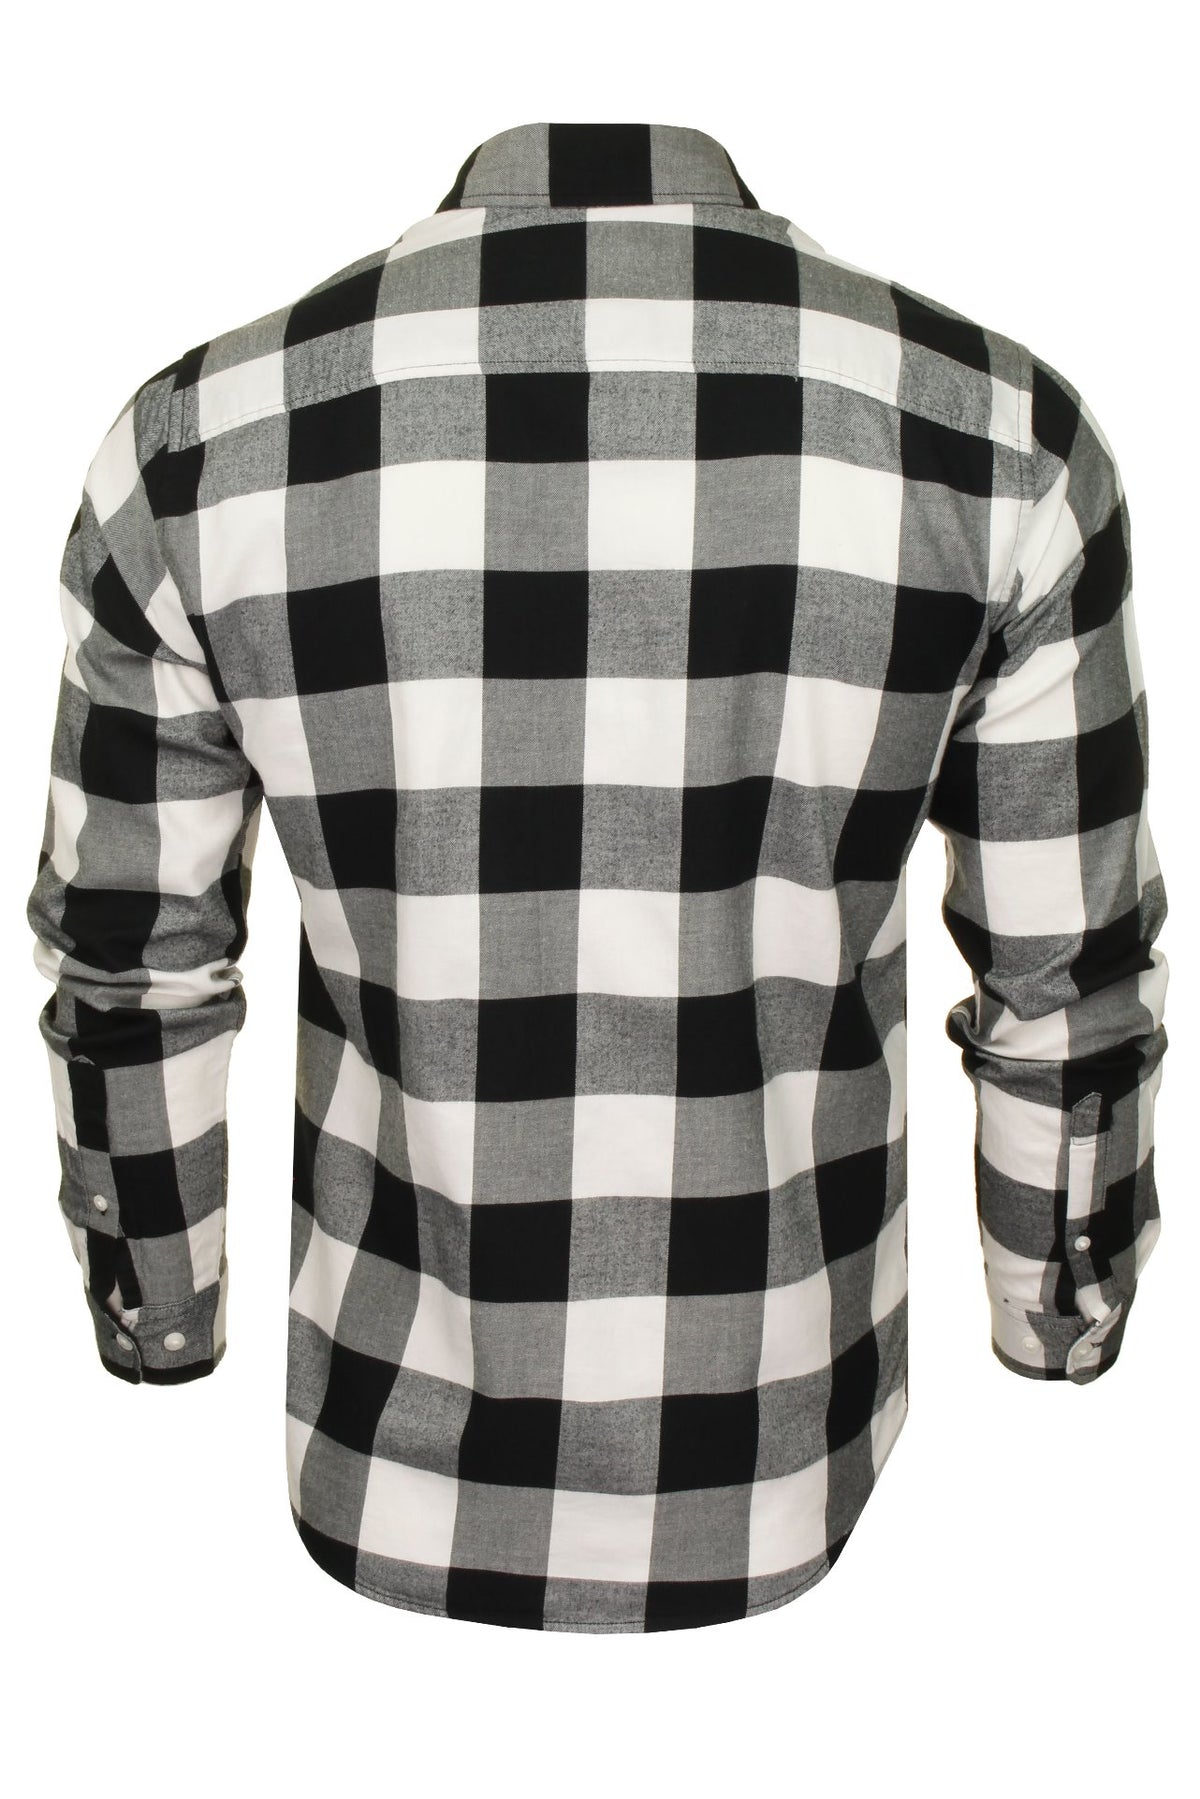 Jack & Jones Men's 'Gingham' Check Twill Shirt - Long Sleeved, 03, 12181602, Whisper White